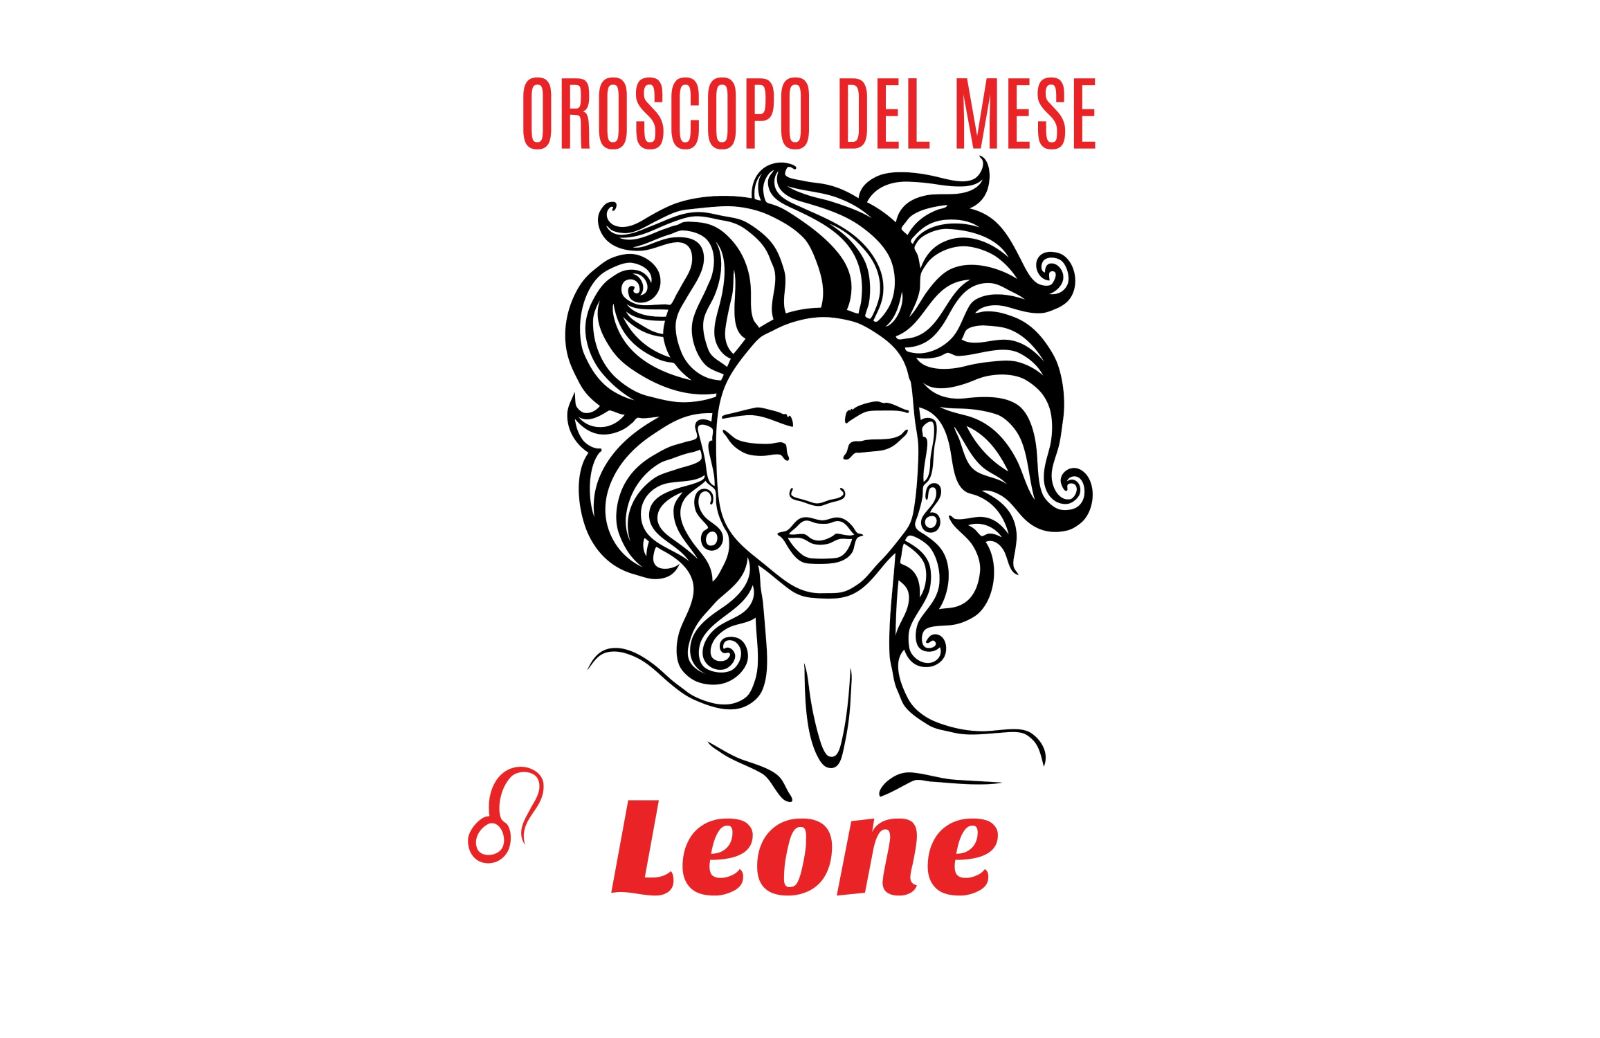 Oroscopo del mese: Leone - gennaio 2020